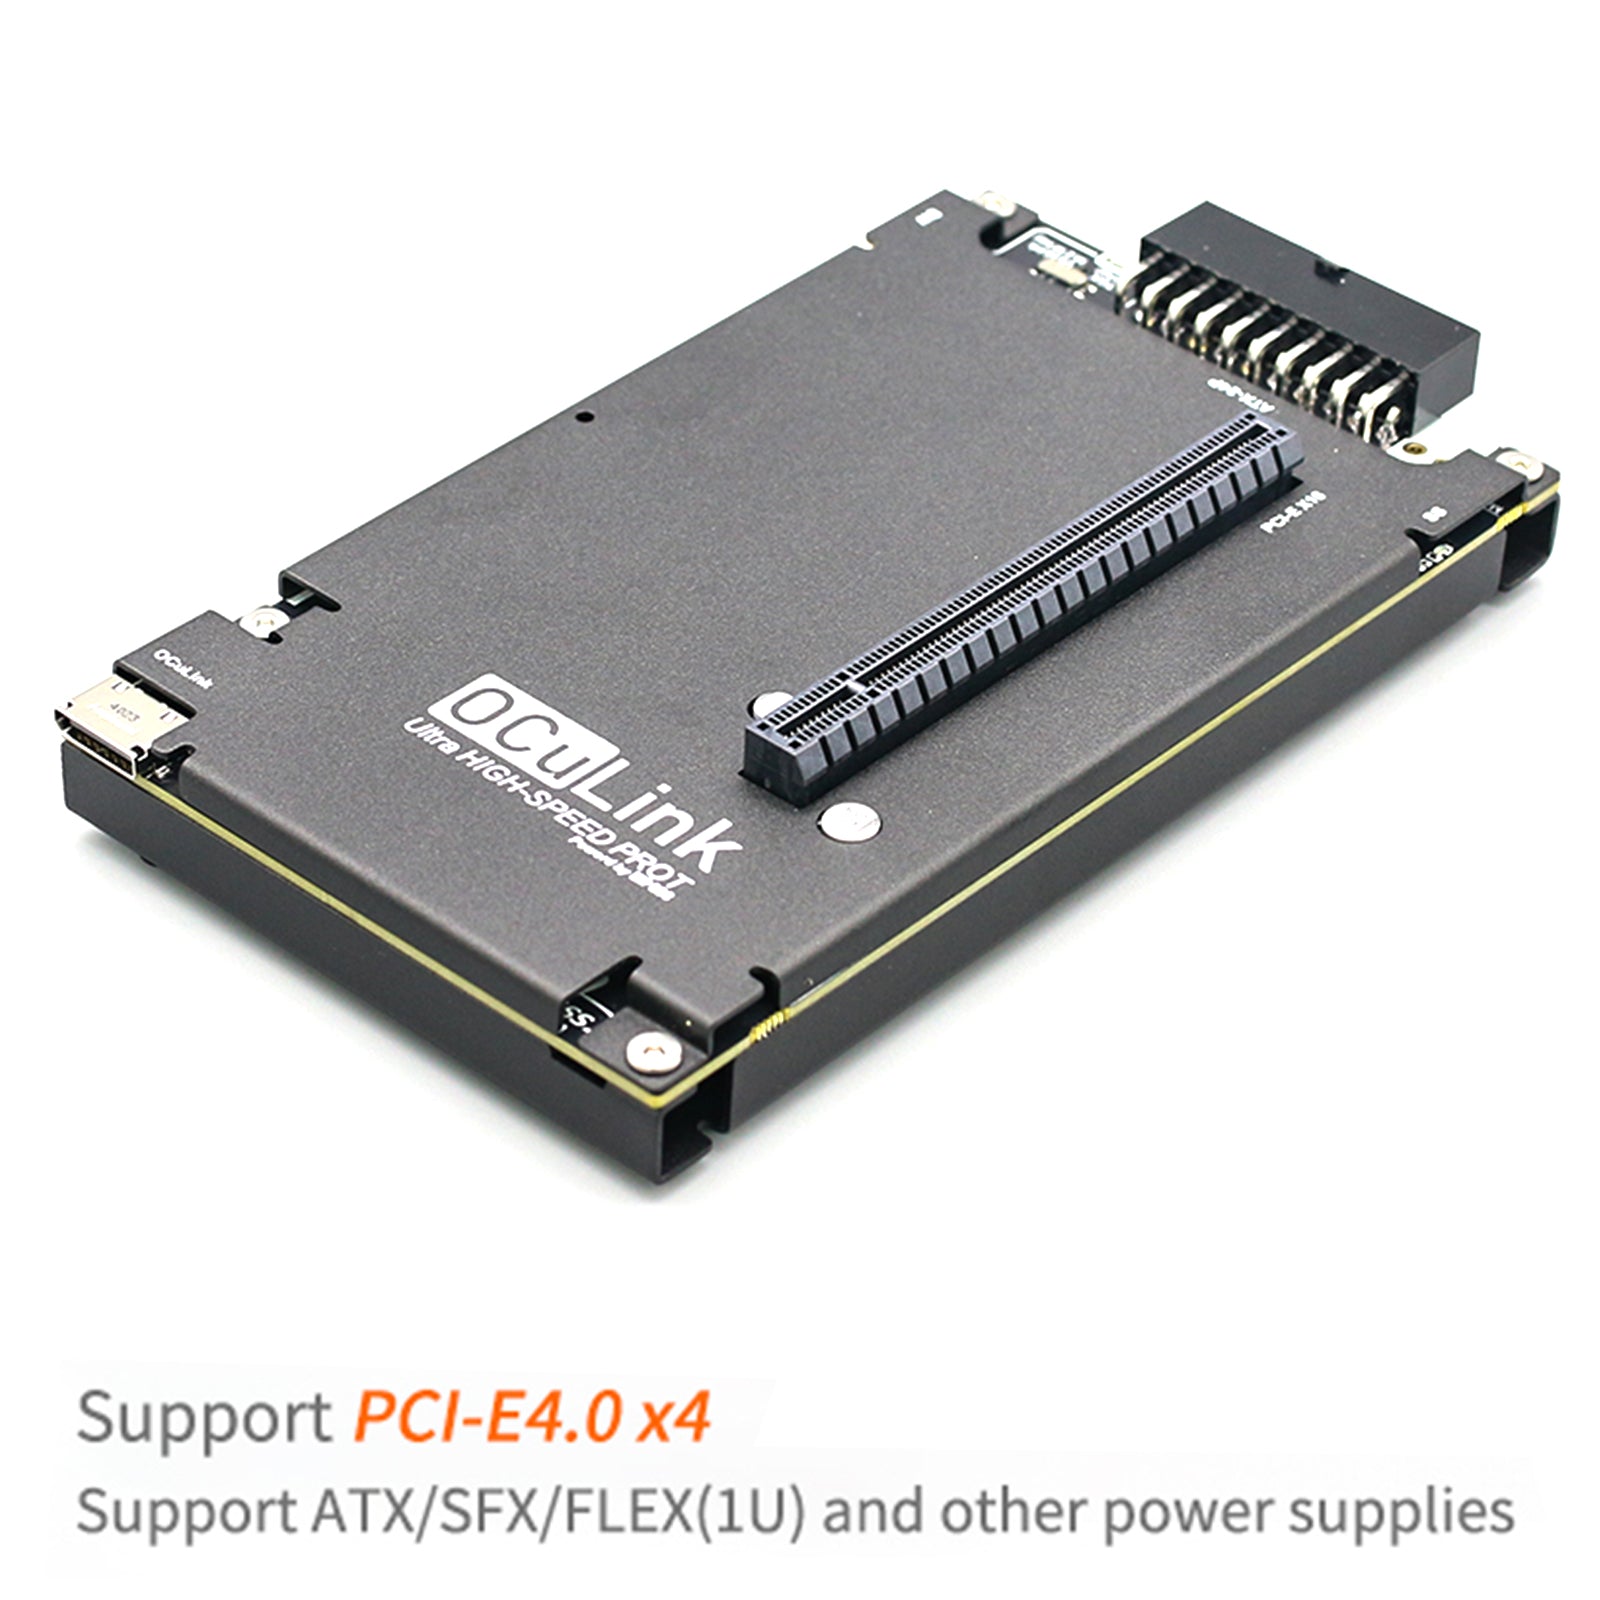 Chip de alta compatibilidad OCuP4v2 PCI-E4.0 estación de expansión de tarjeta gráfica externa